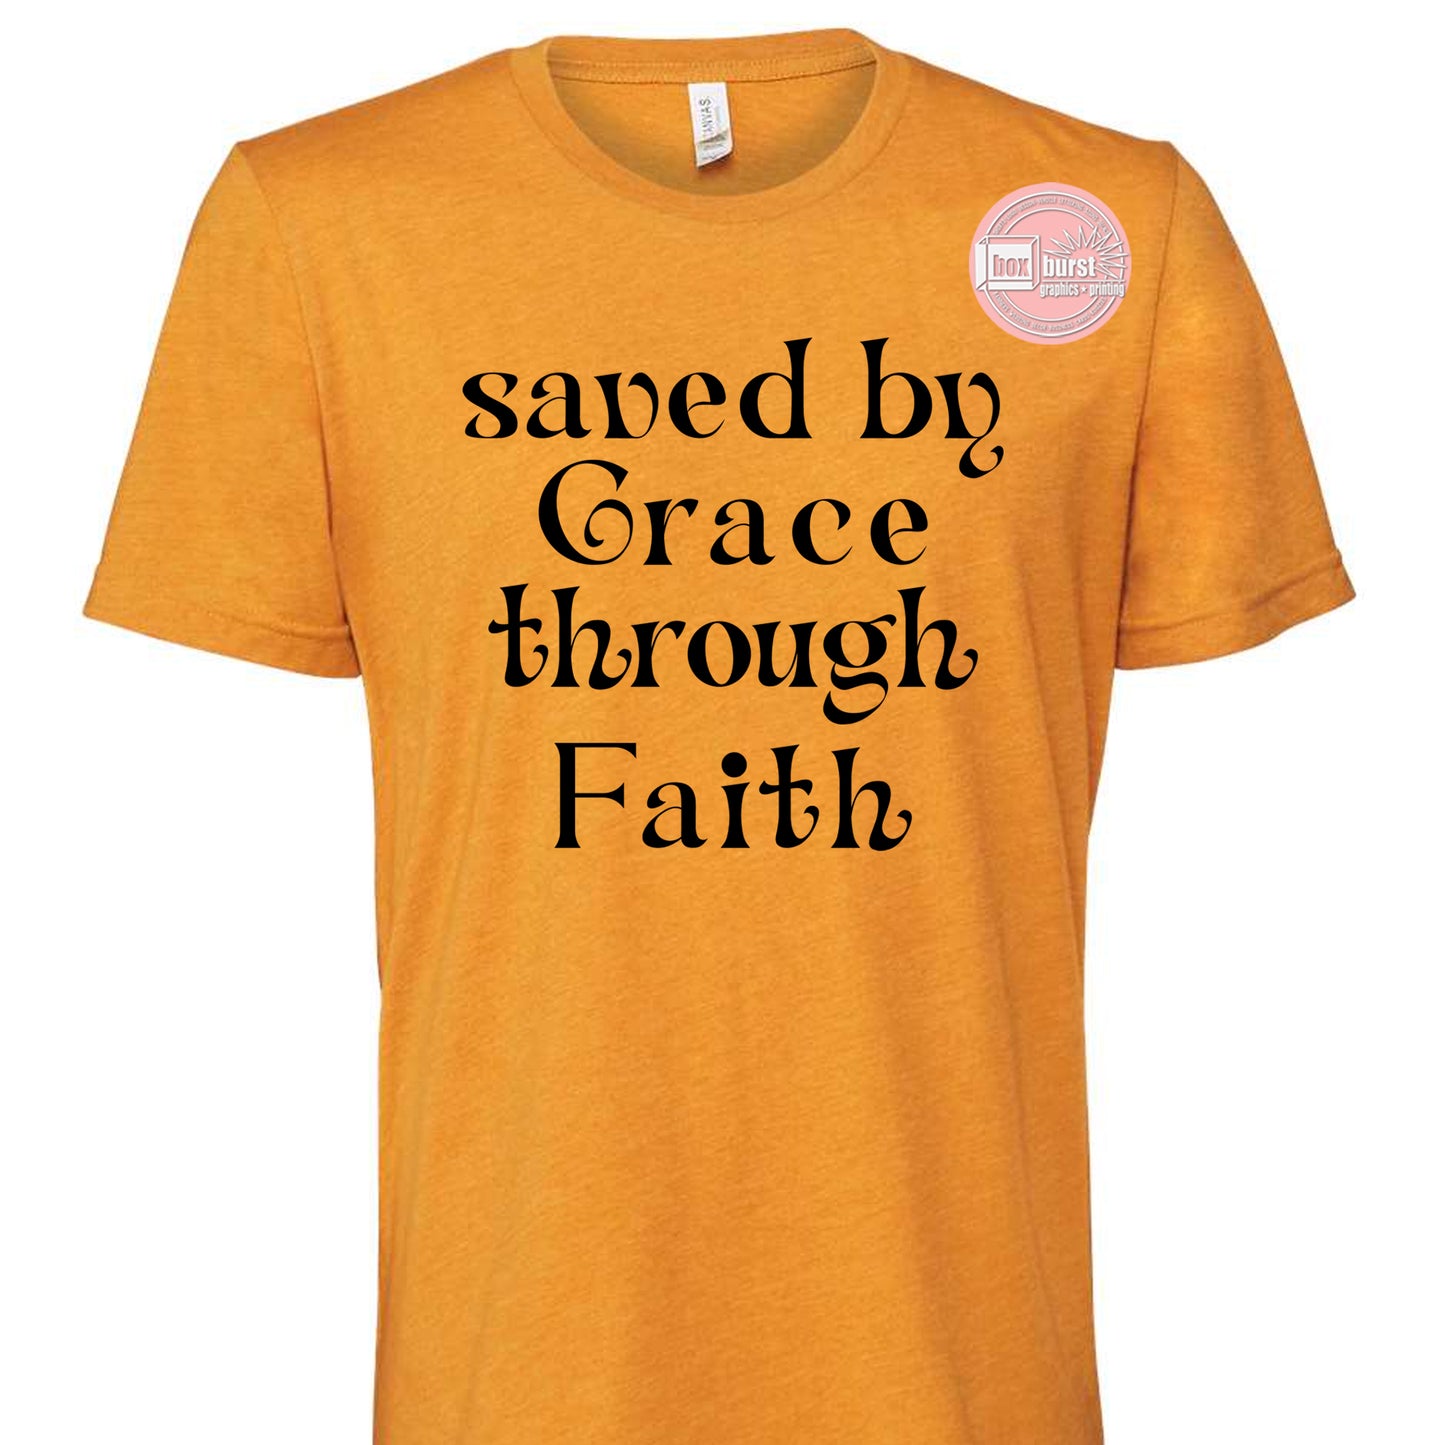 Saved by Grace through Faith Shirt bella canvas soft shirt